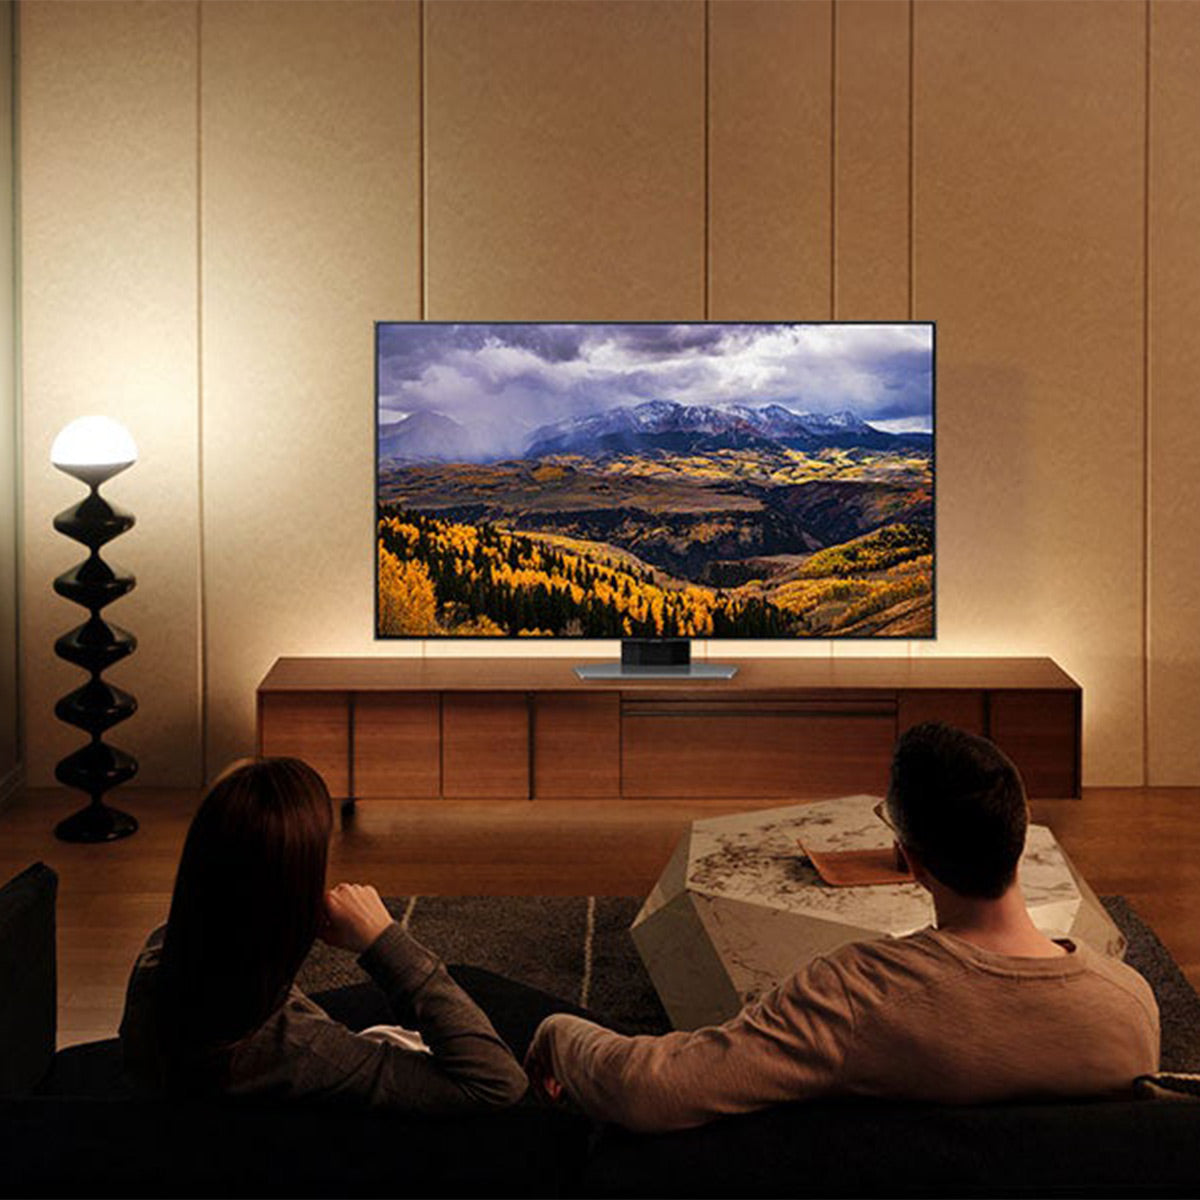 Samsung 85 QLED 4K Smart TV